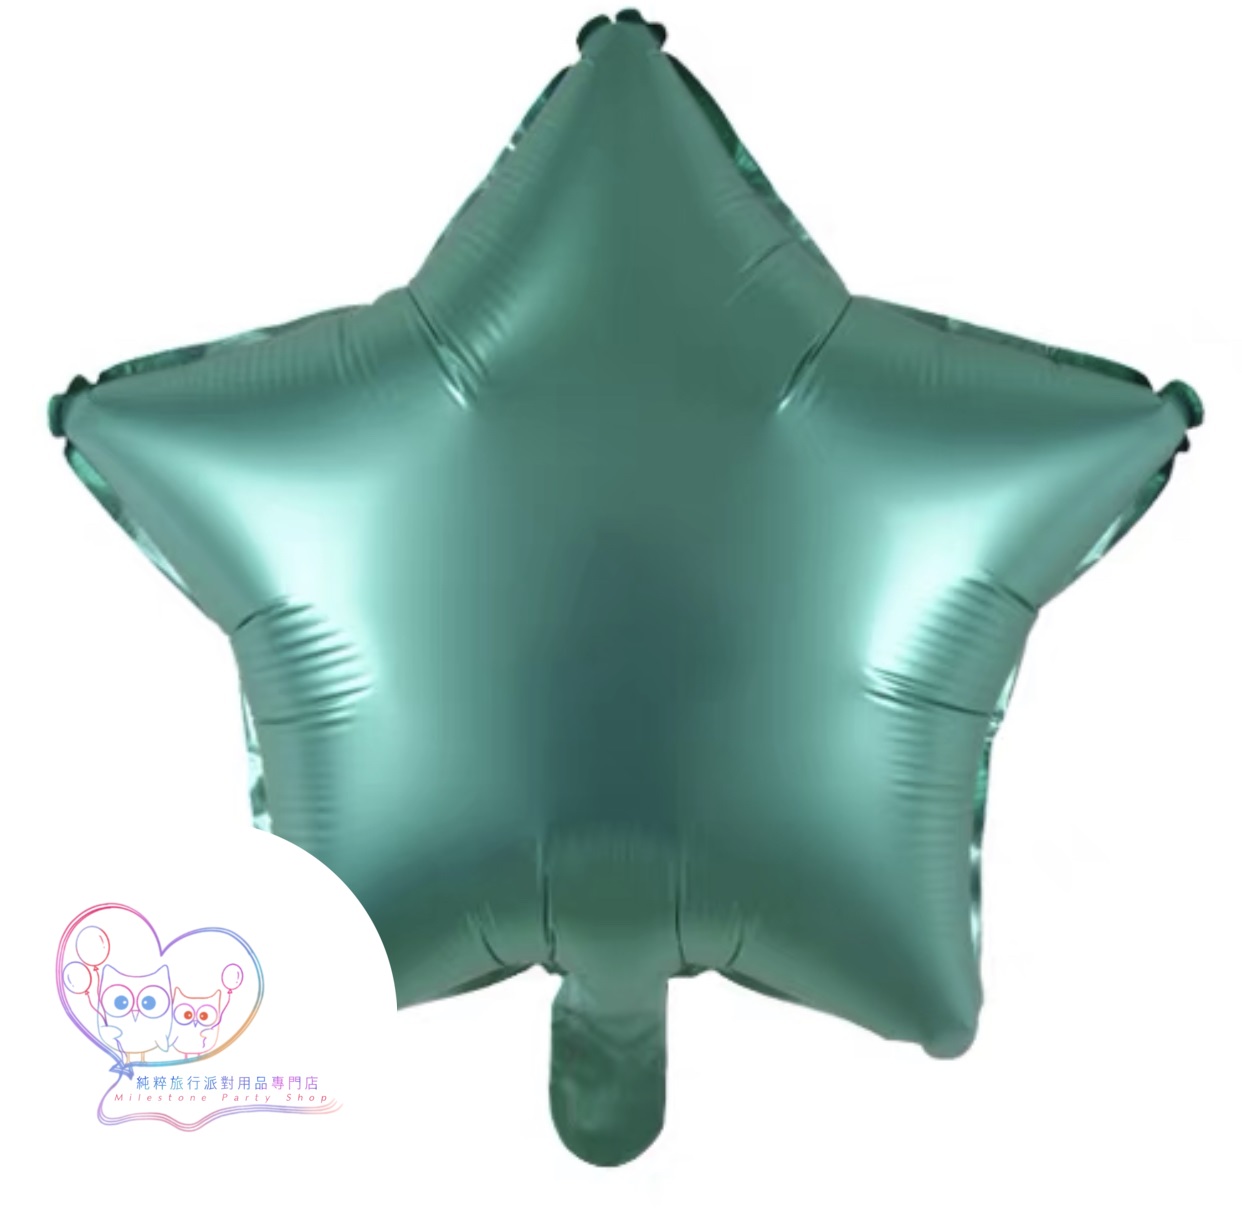 18吋星星鋁膜氣球 (磨砂綠色) 18SM5